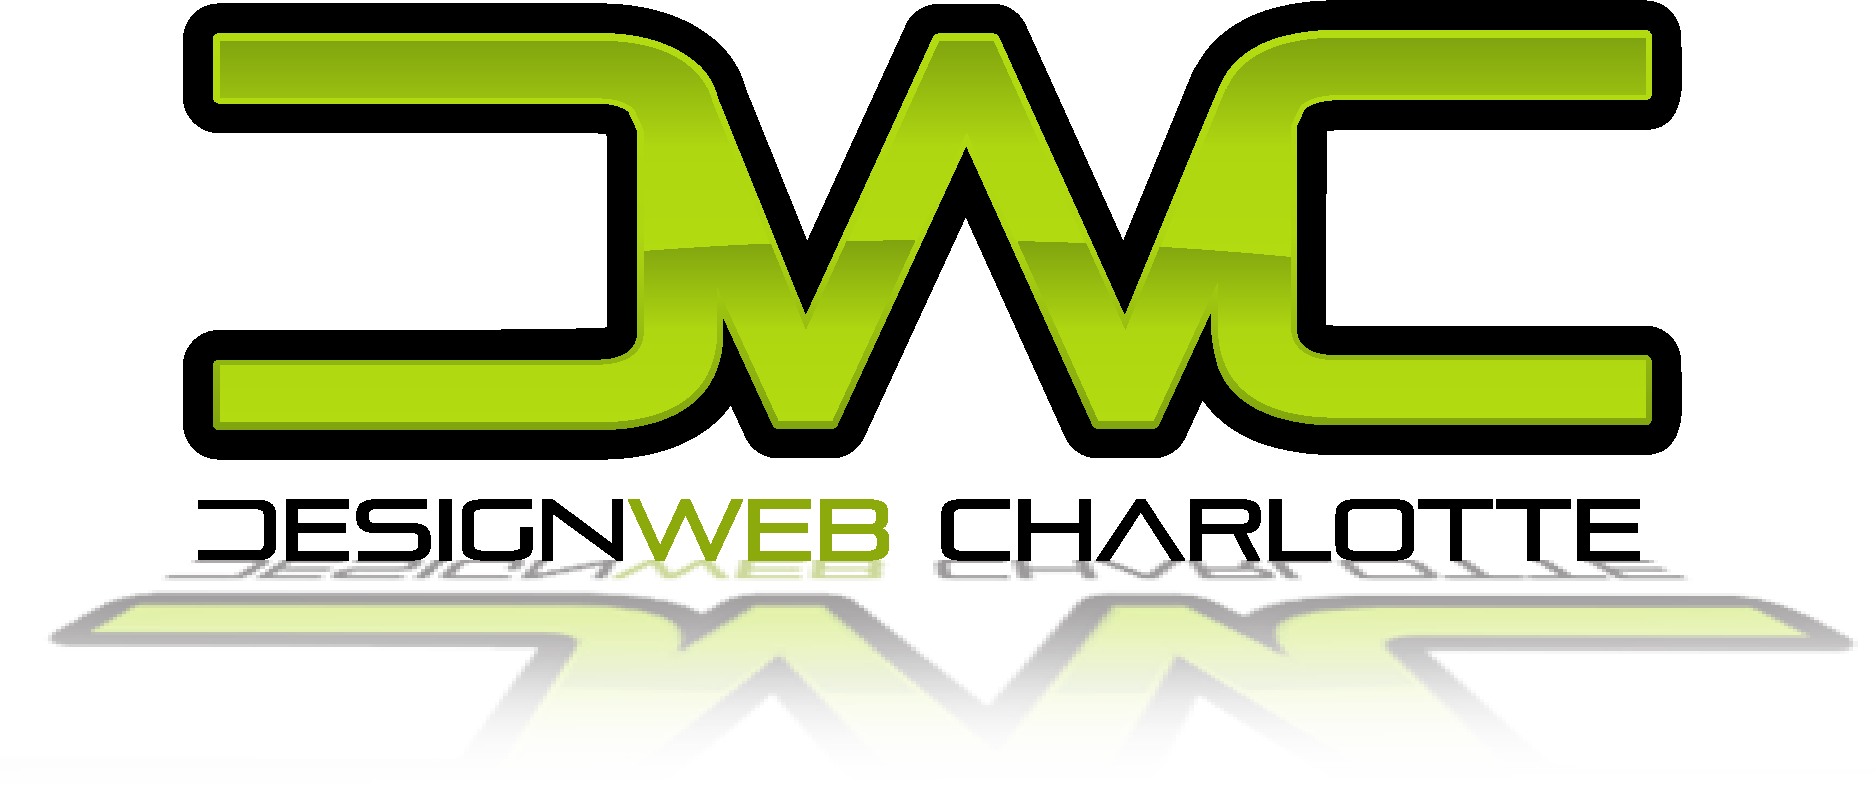 DesignWebCharlotte Logo Vector